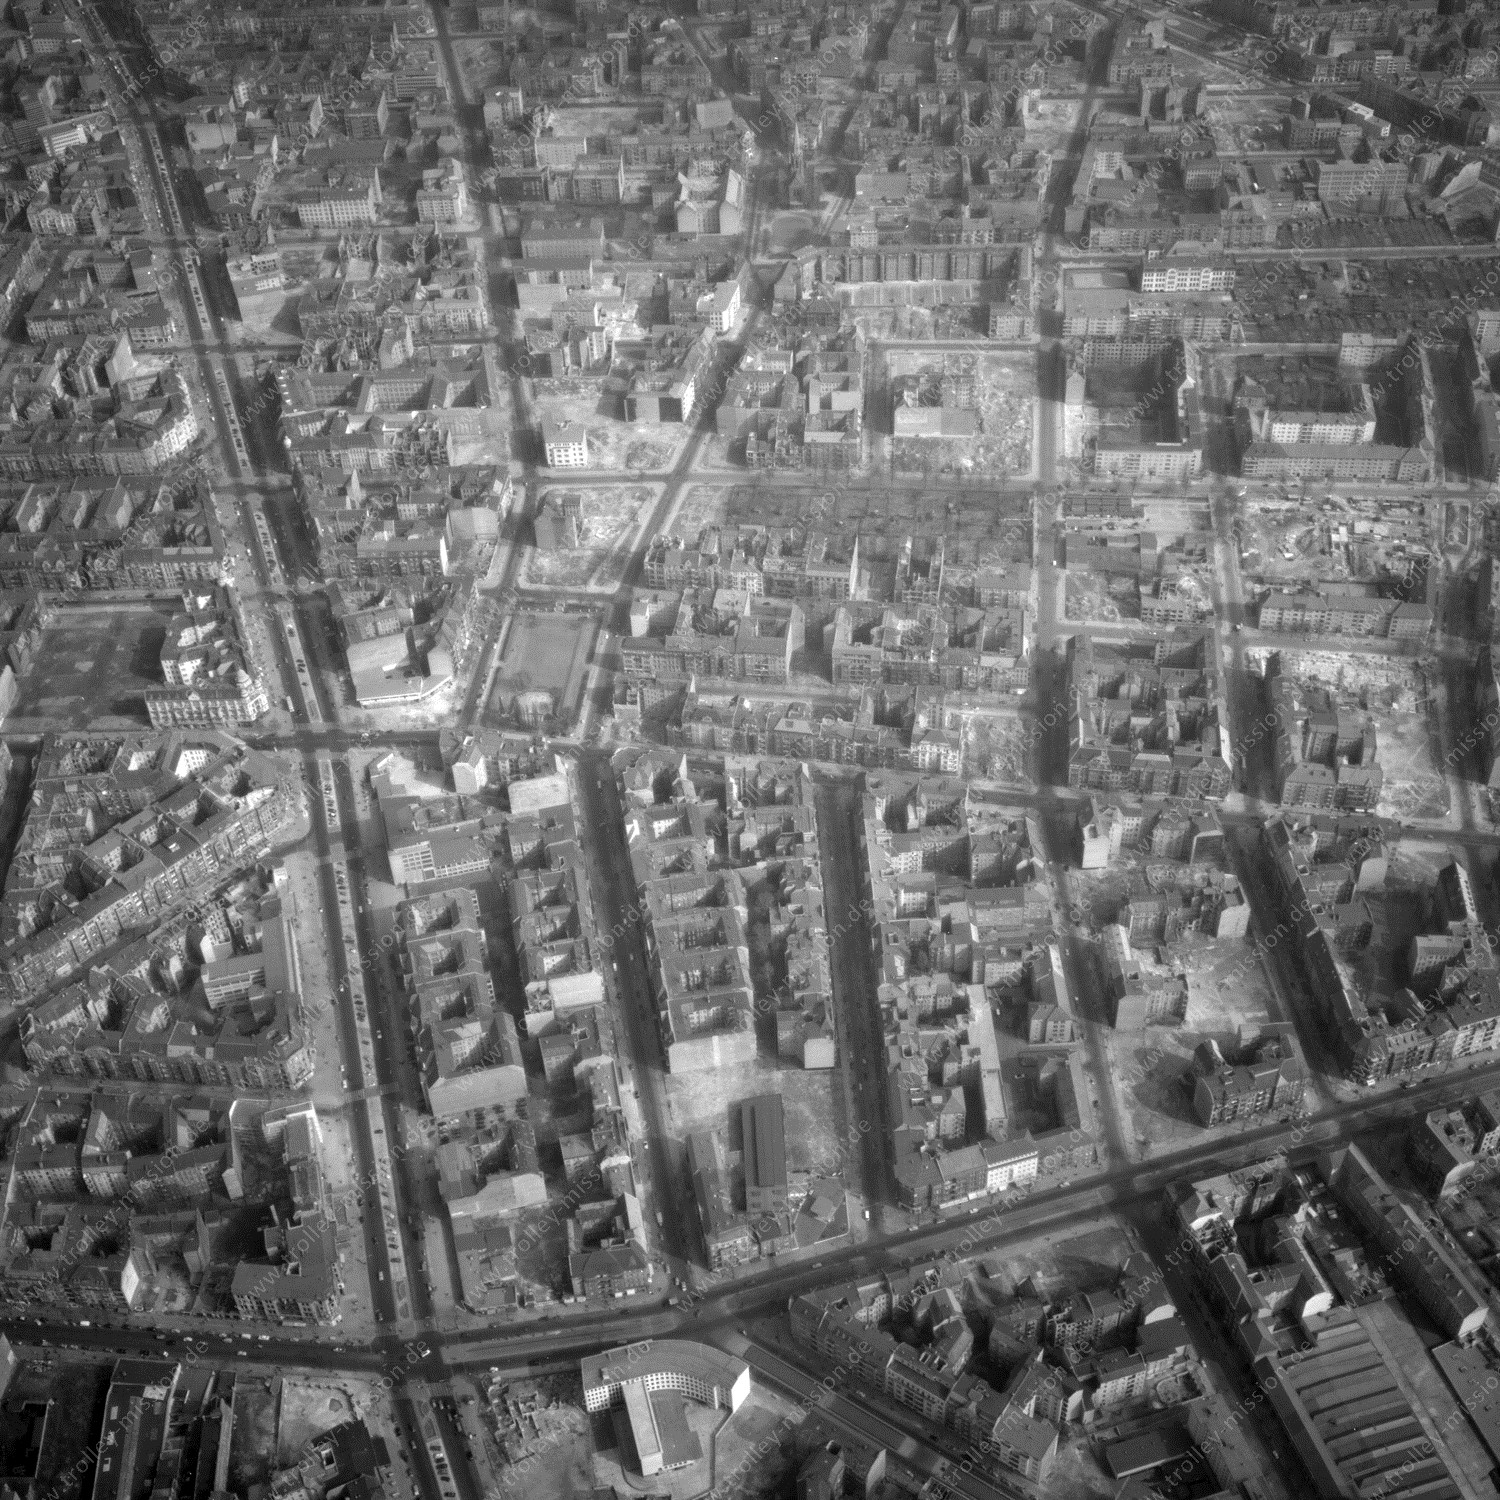 Alte Fotos und Luftbilder von Berlin - Luftbildaufnahme Nr. 11 - Historische Luftaufnahmen von West-Berlin aus dem Jahr 1954 - Flugstrecke Charlie